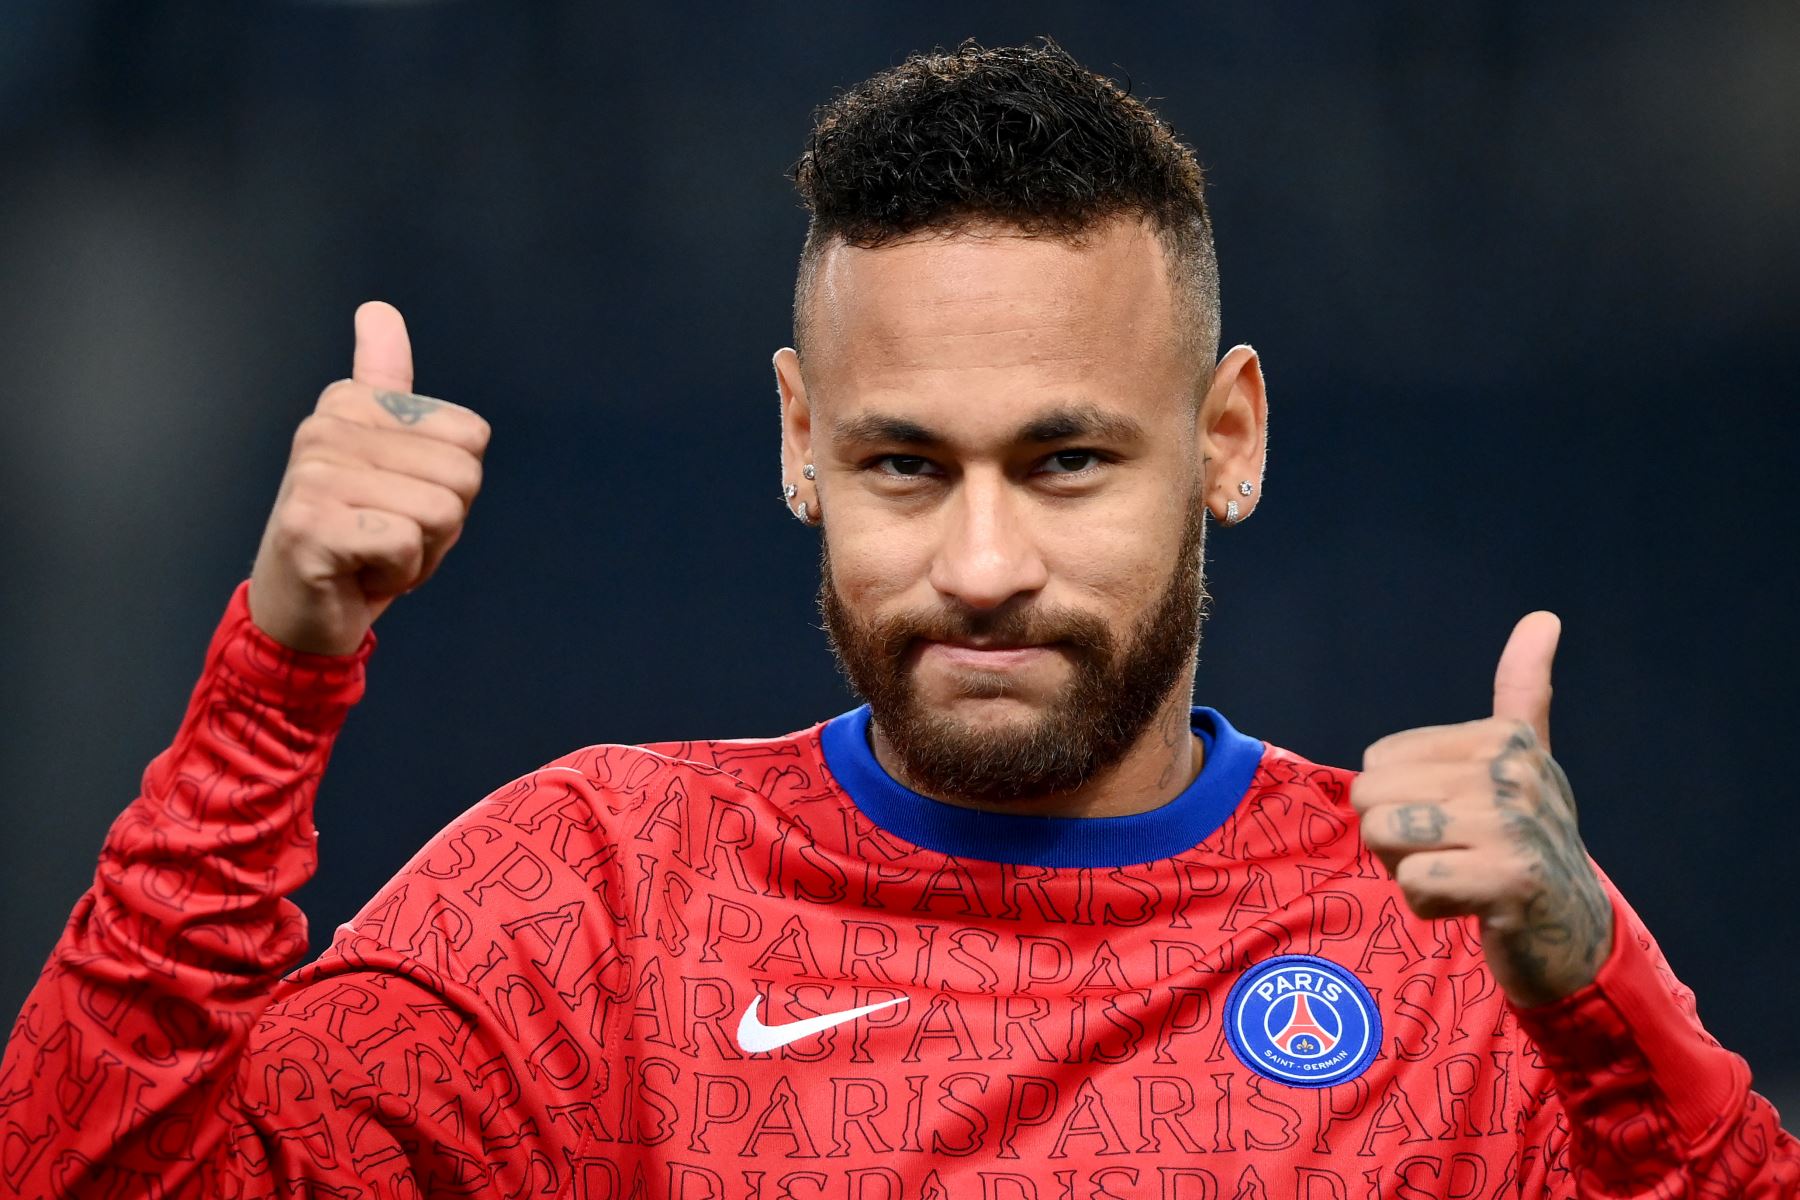 El delantero brasileño del Paris Saint-Germain, Neymar, hace un gesto durante el calentamiento previo al partido de fútbol francés L1 entre Paris Saint-Germain (PSG) y Marsella (OM) en el estadio Parc de Princes en París el 13 de septiembre de 2020. Foto: AFP